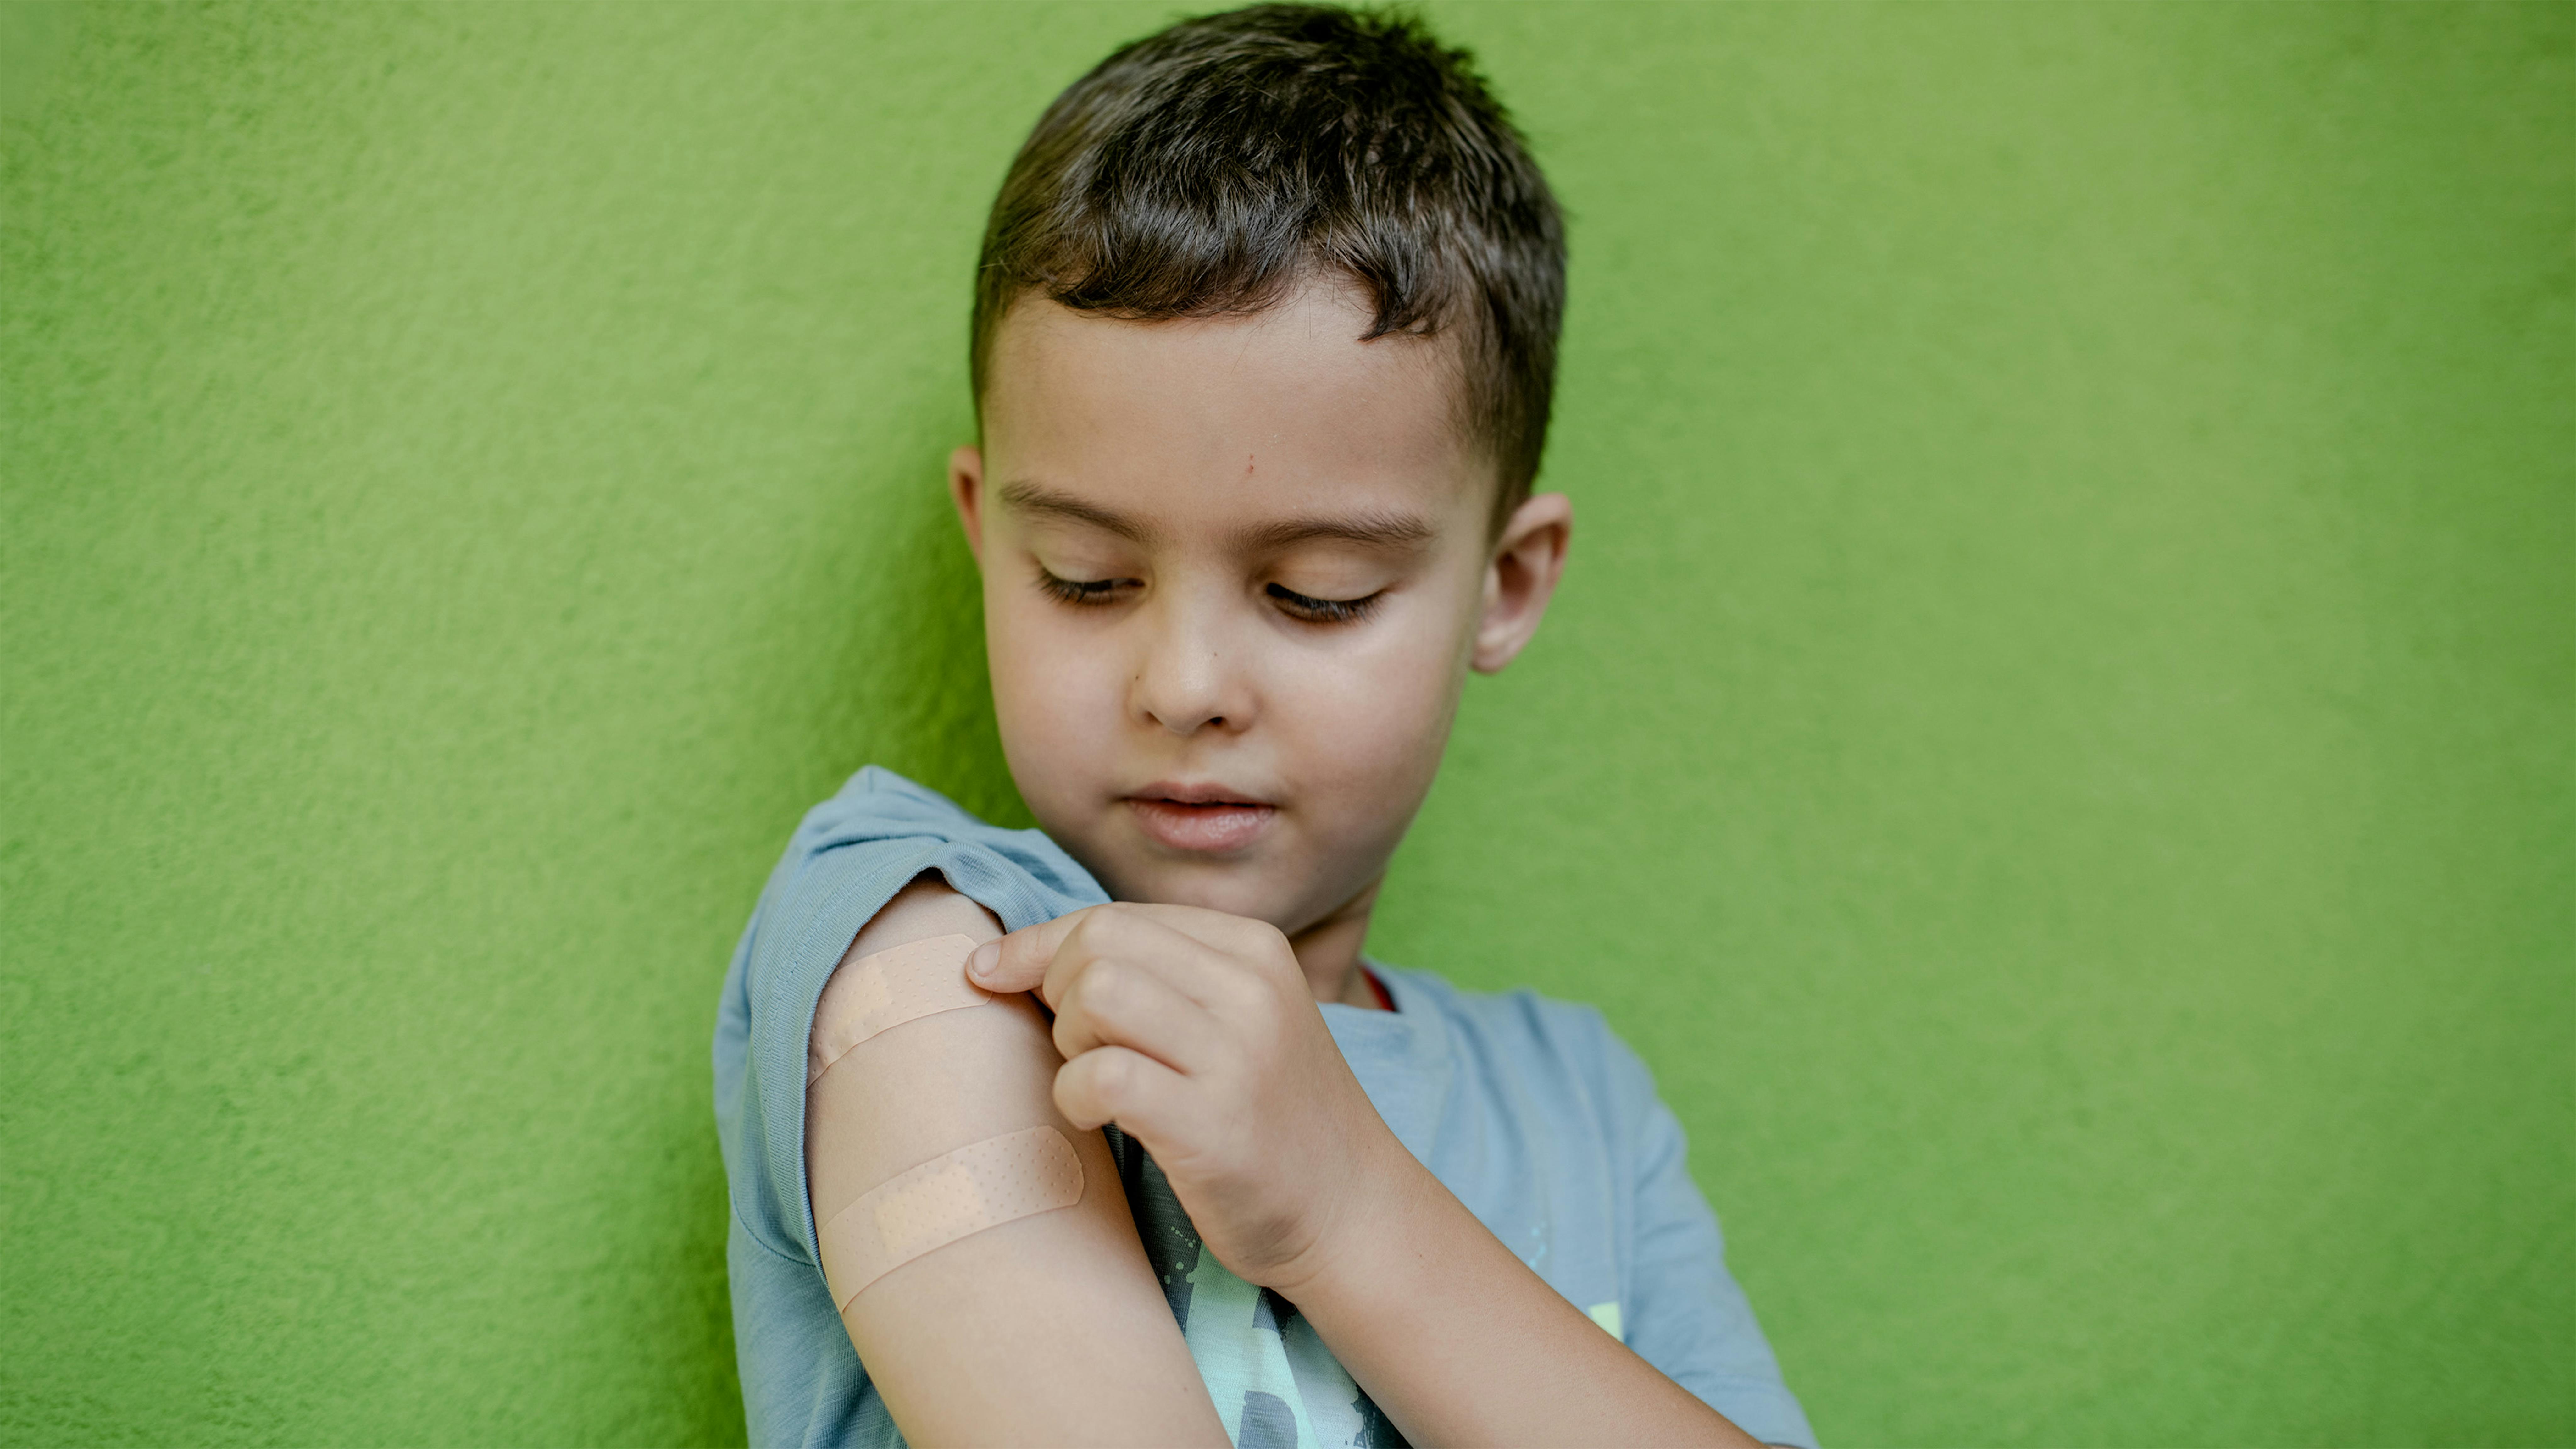 Polonia, Mykyta di 6 anni mostra il braccio dove è stato vaccinato © UNICEF/U.S. CDC/UN0715423/Kasia Strek